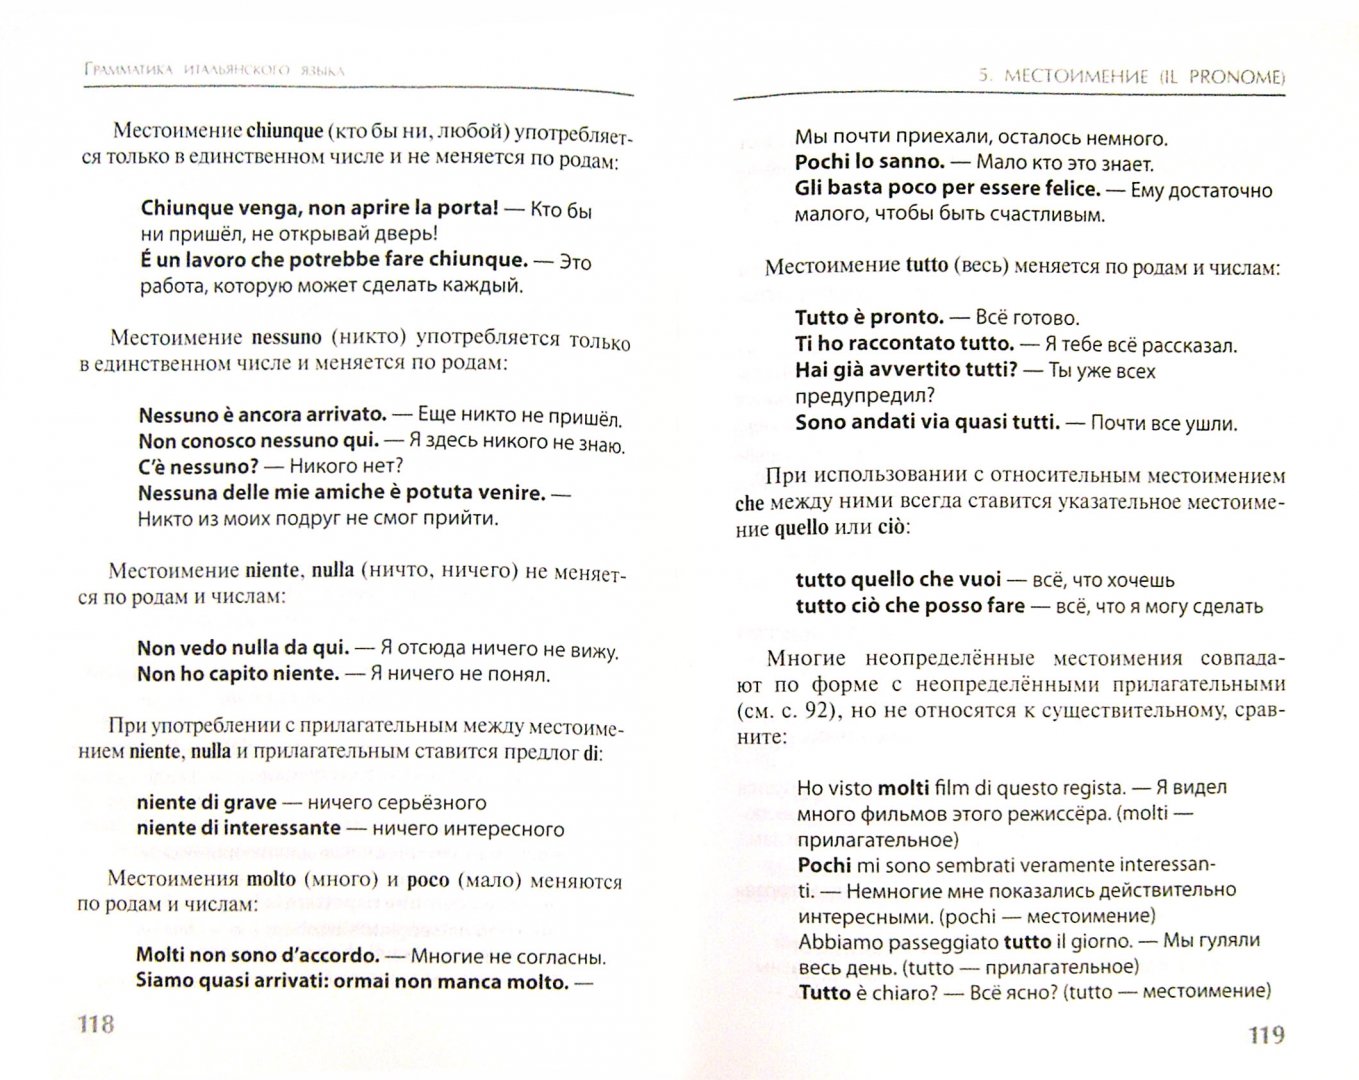 Иллюстрация 1 из 23 для Грамматика итальянского языка - Буэно, Грушевская | Лабиринт - книги. Источник: Лабиринт